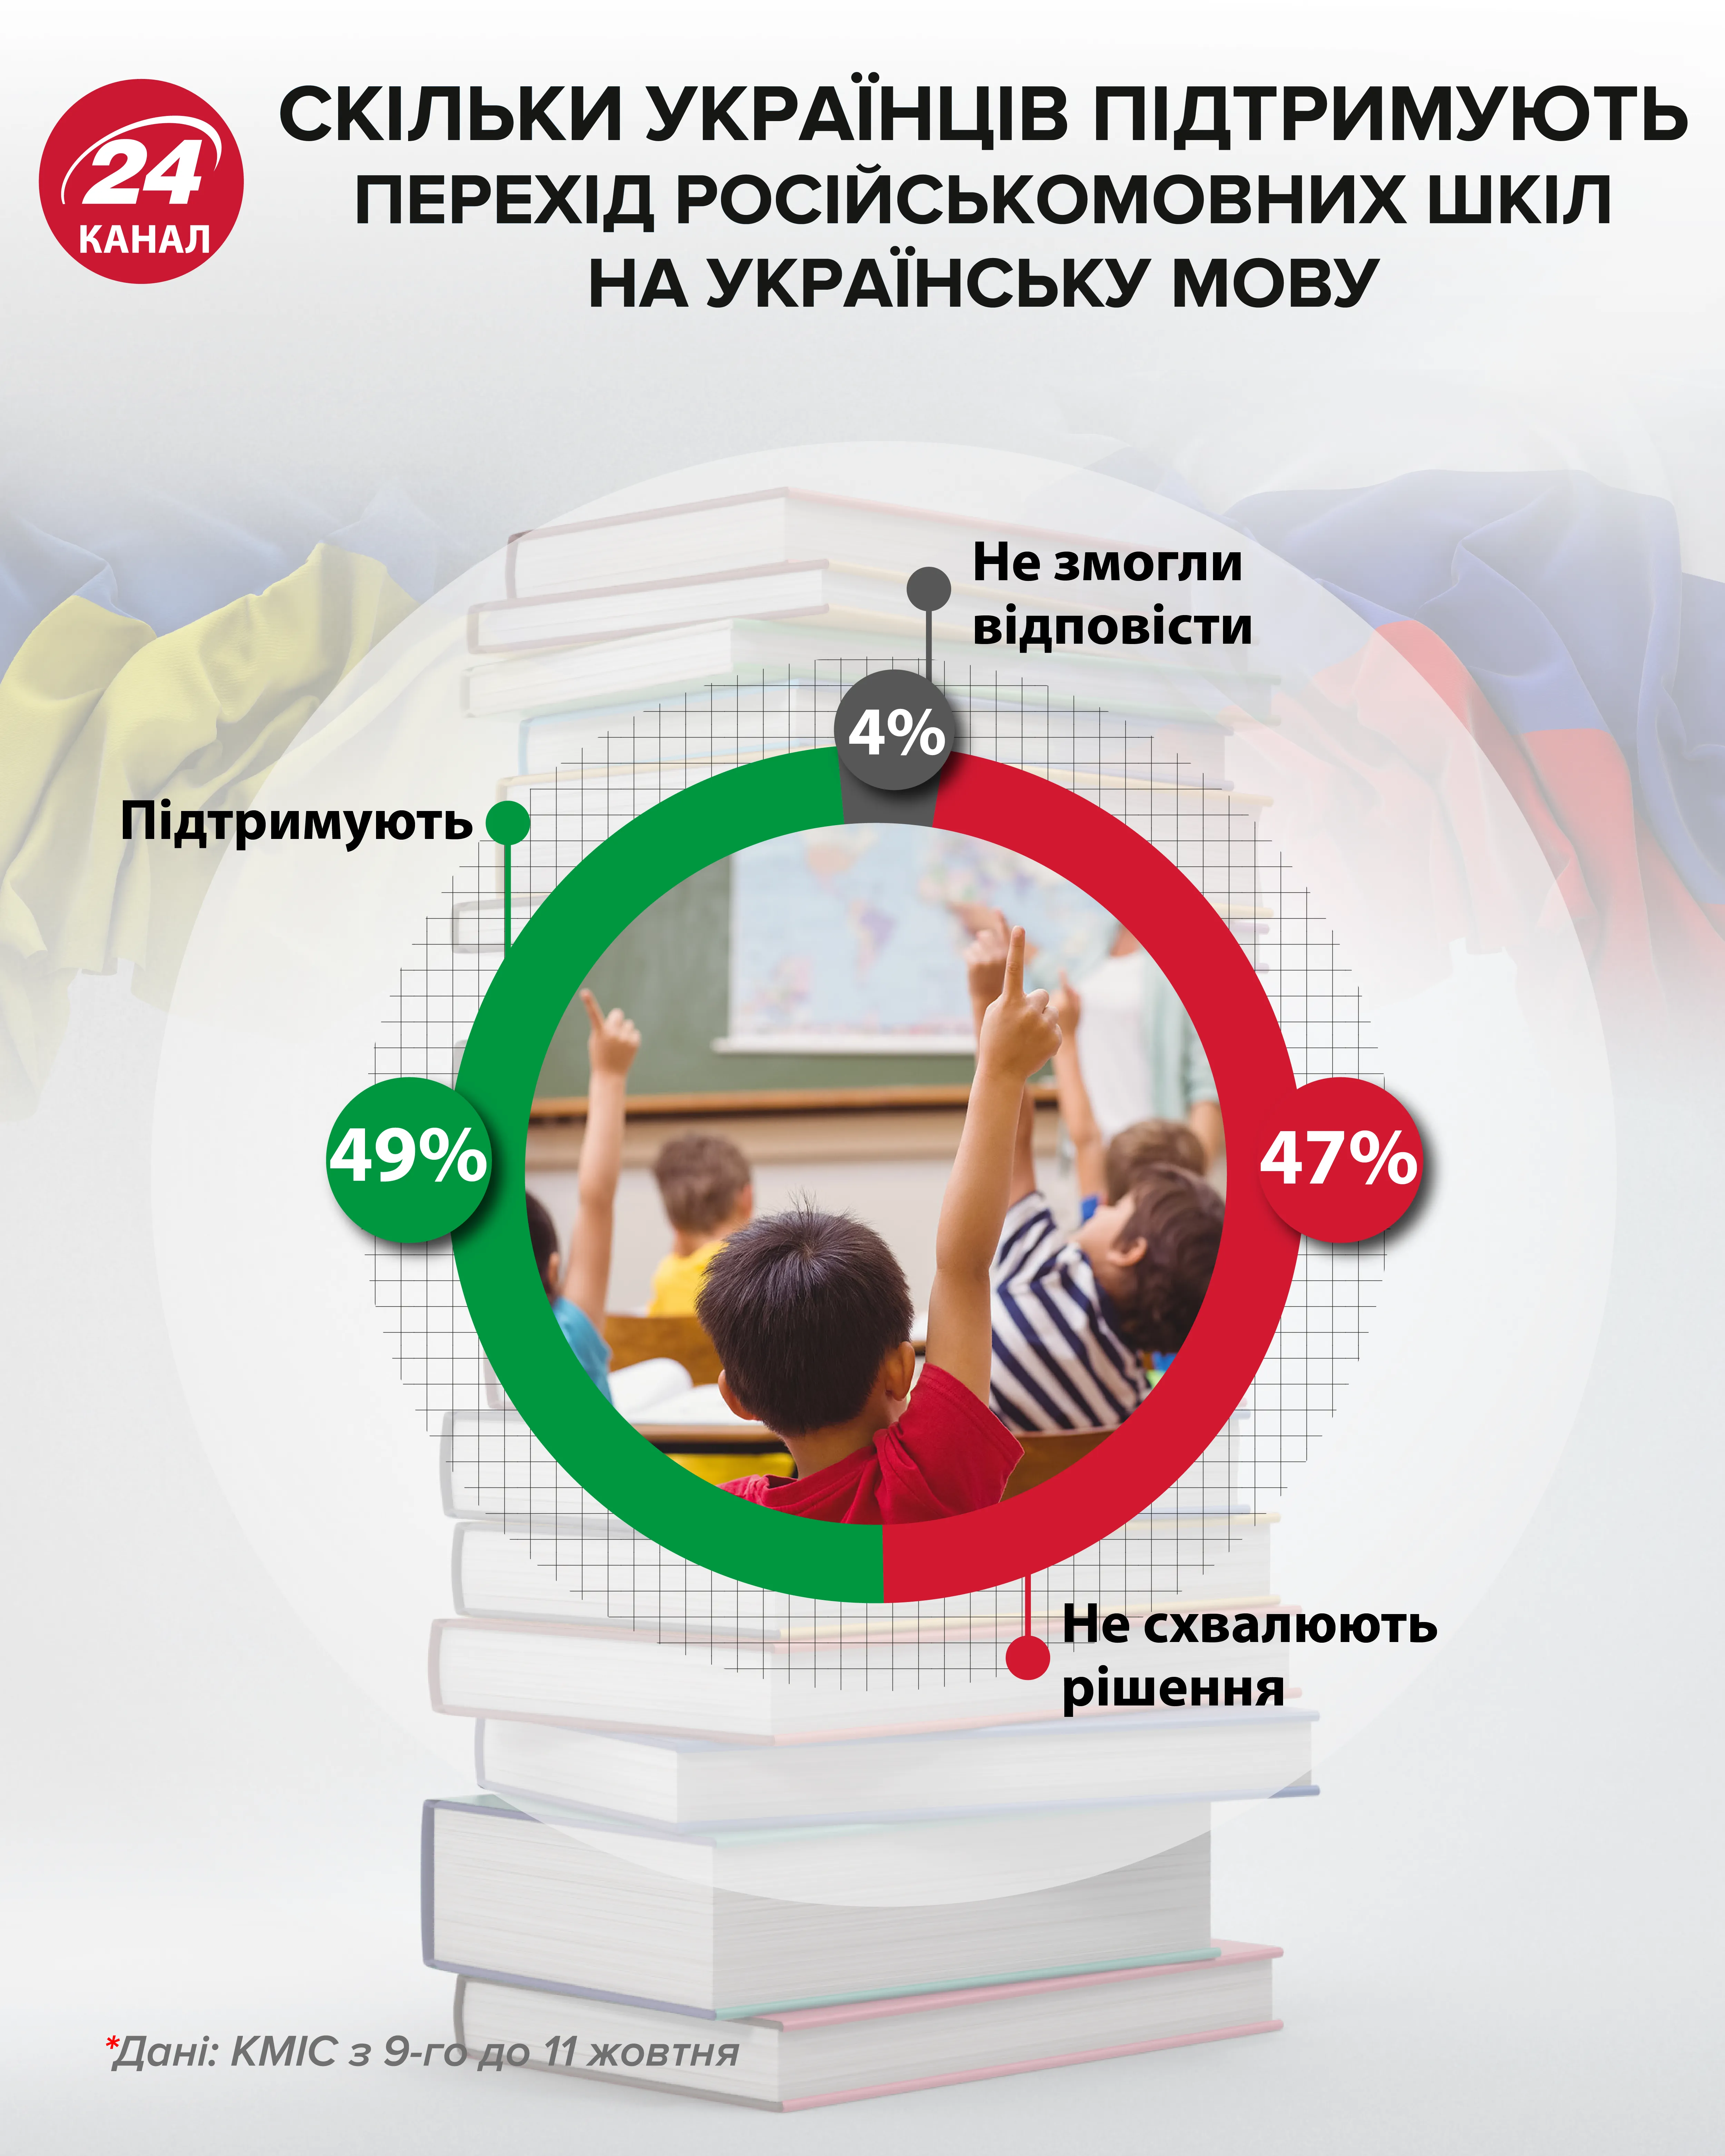 Поддерживают ли украинцы переход русскоязычных школ на украинский